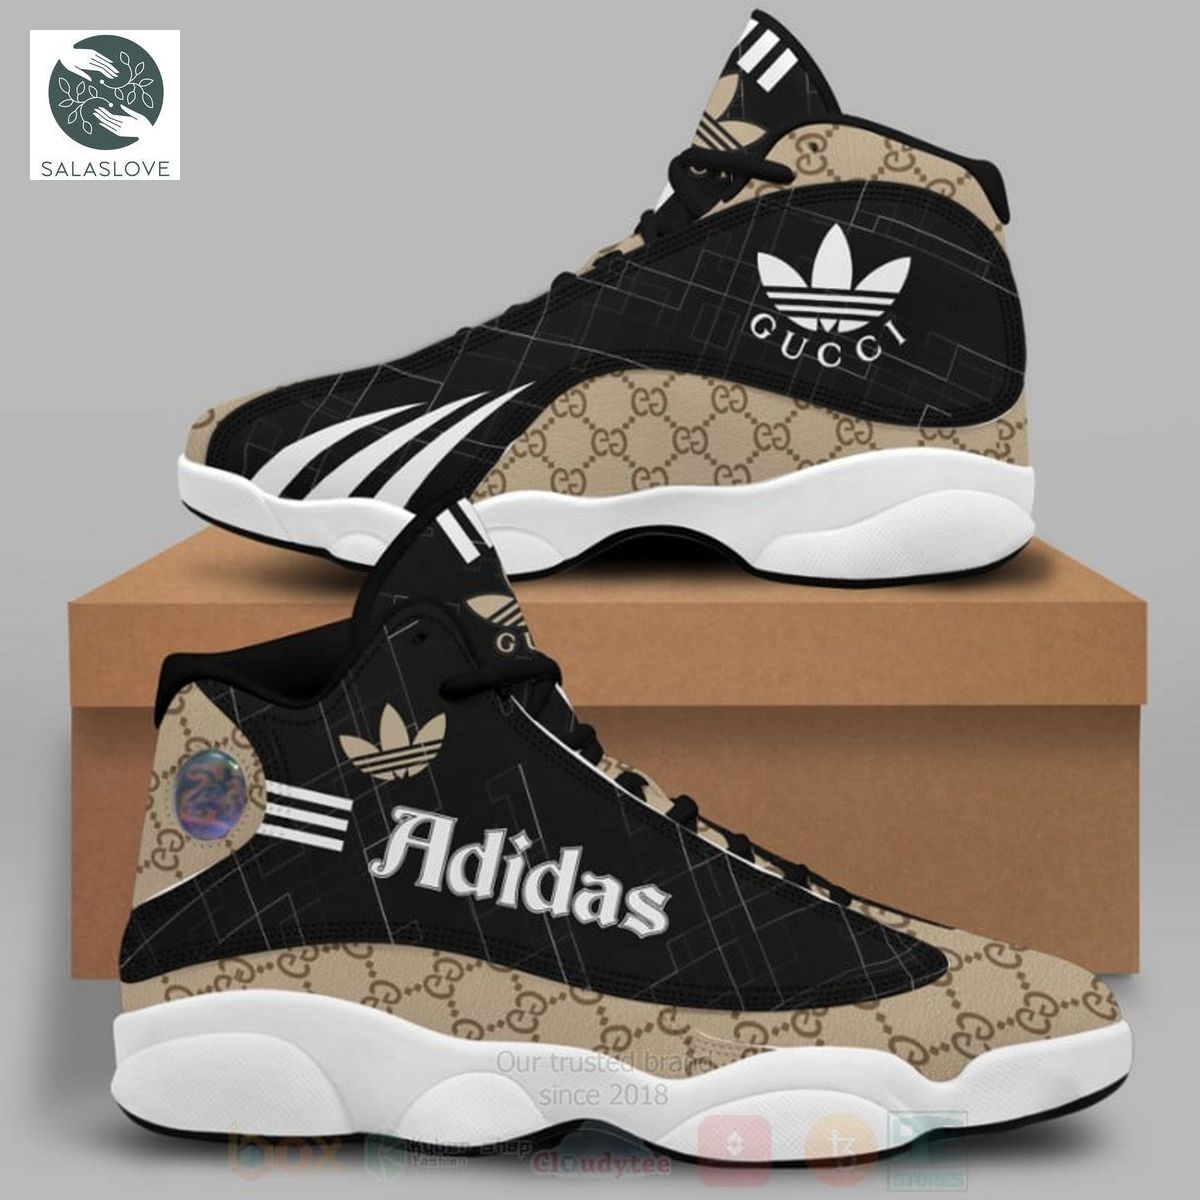 Gucci Adidas Air Jordan 13 Sneakers ver 13